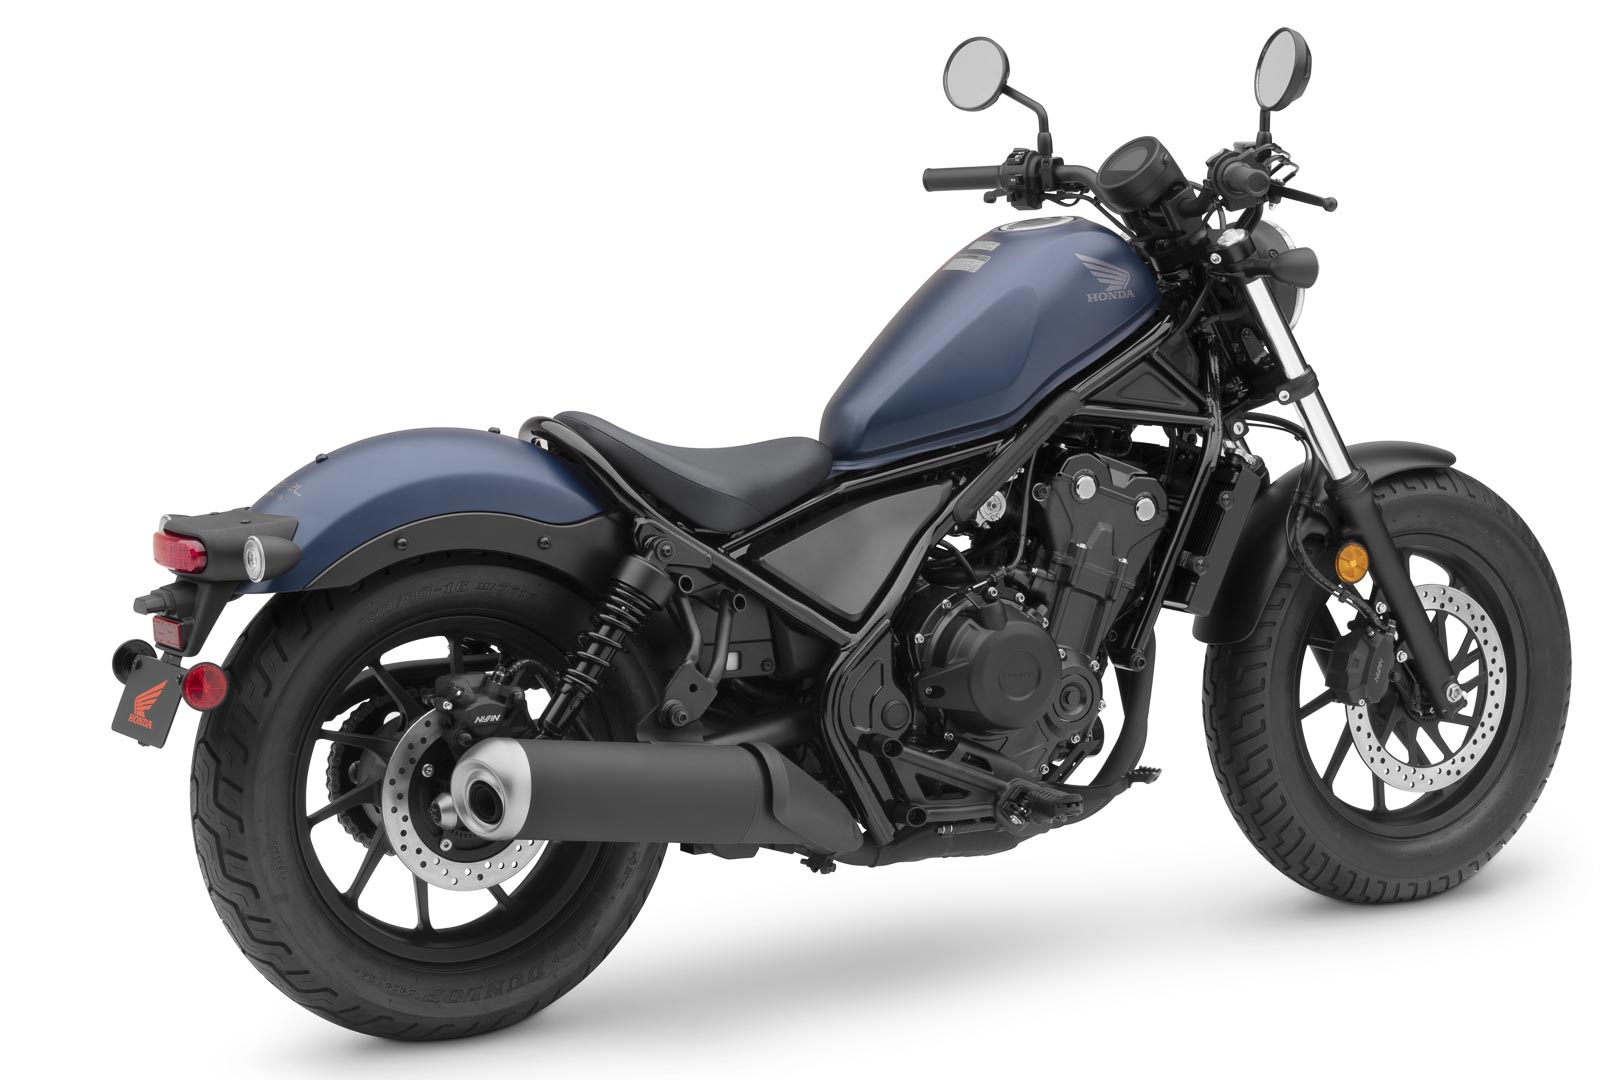 2020-Honda-Rebel-500-First-Look-cruiser-motorcycle-7.jpg